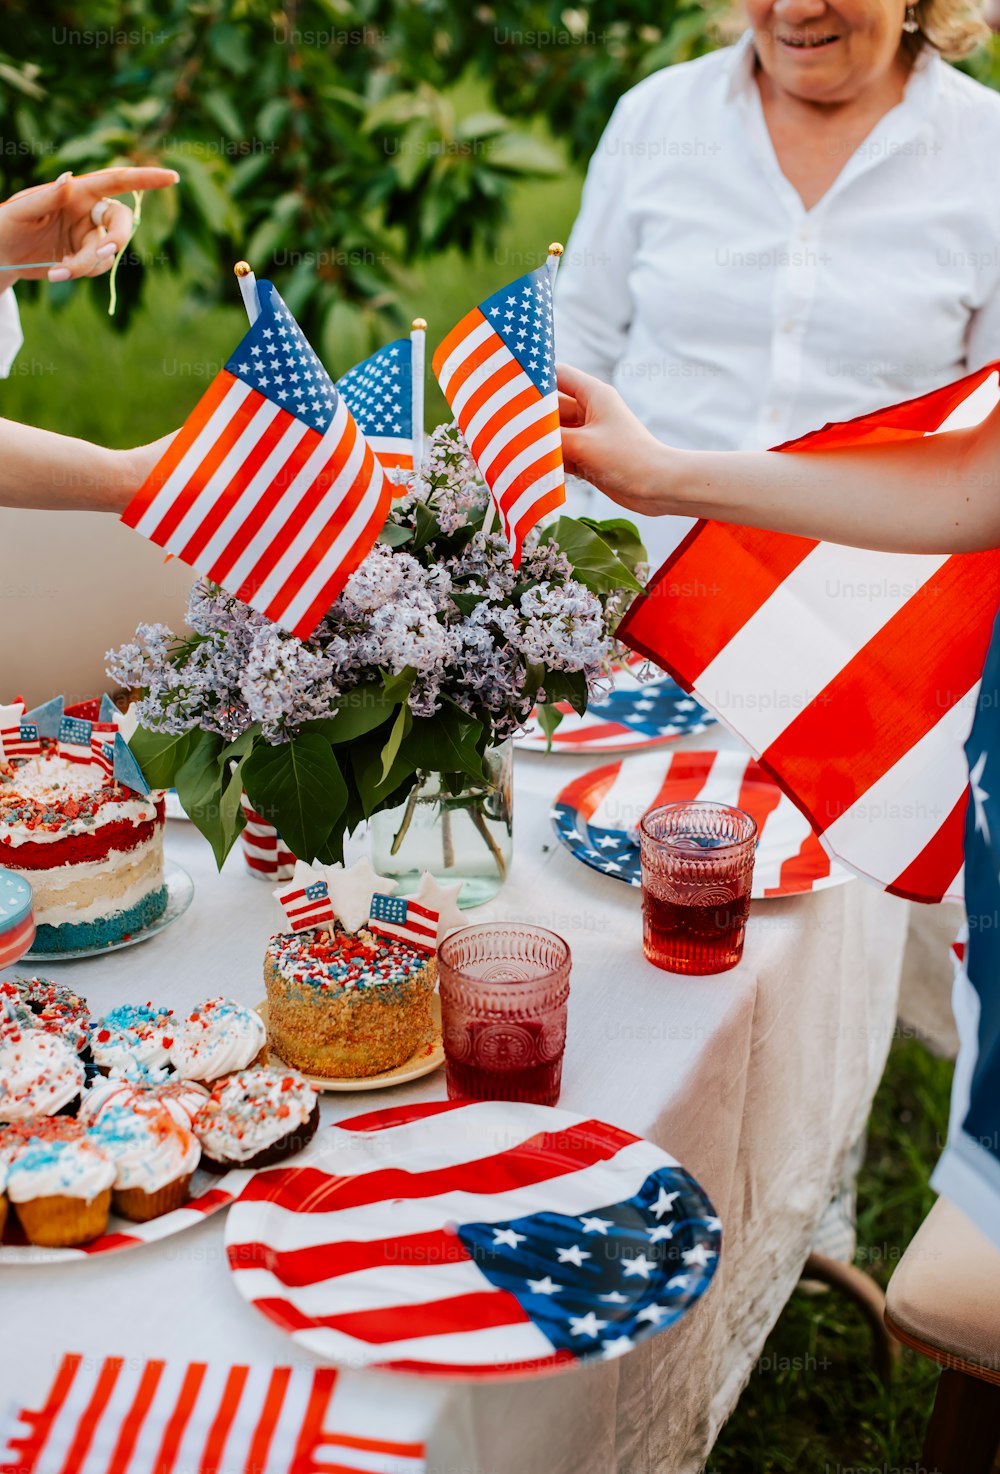 アメリカの国旗とカップケーキが置かれたテーブル